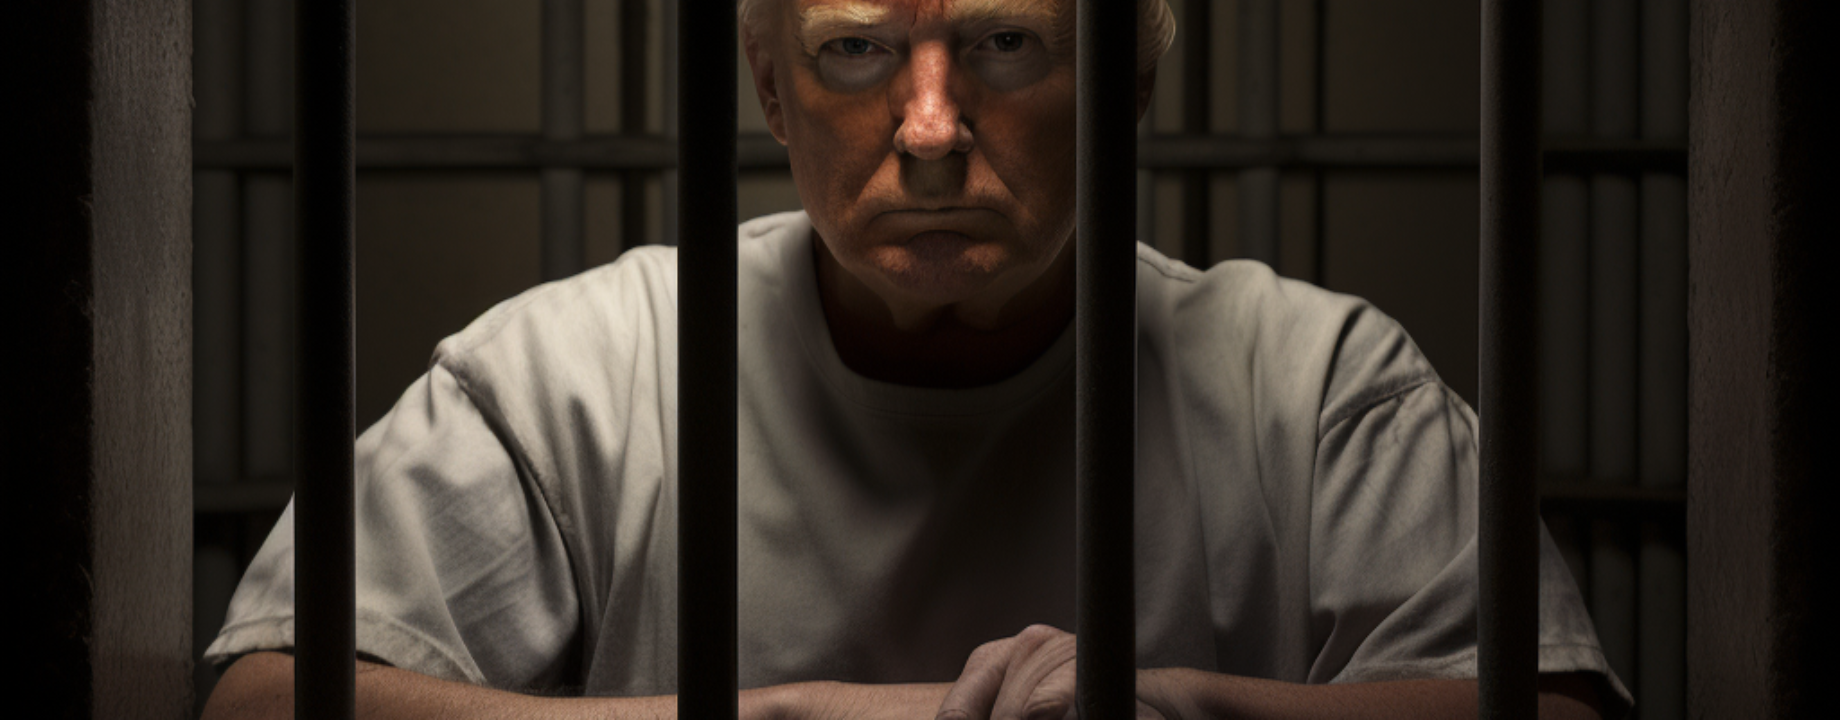 Matyas 47180 Donald Trump behind bars 95e3b428 a9d9 48cc a4eb 6e19c41b825f